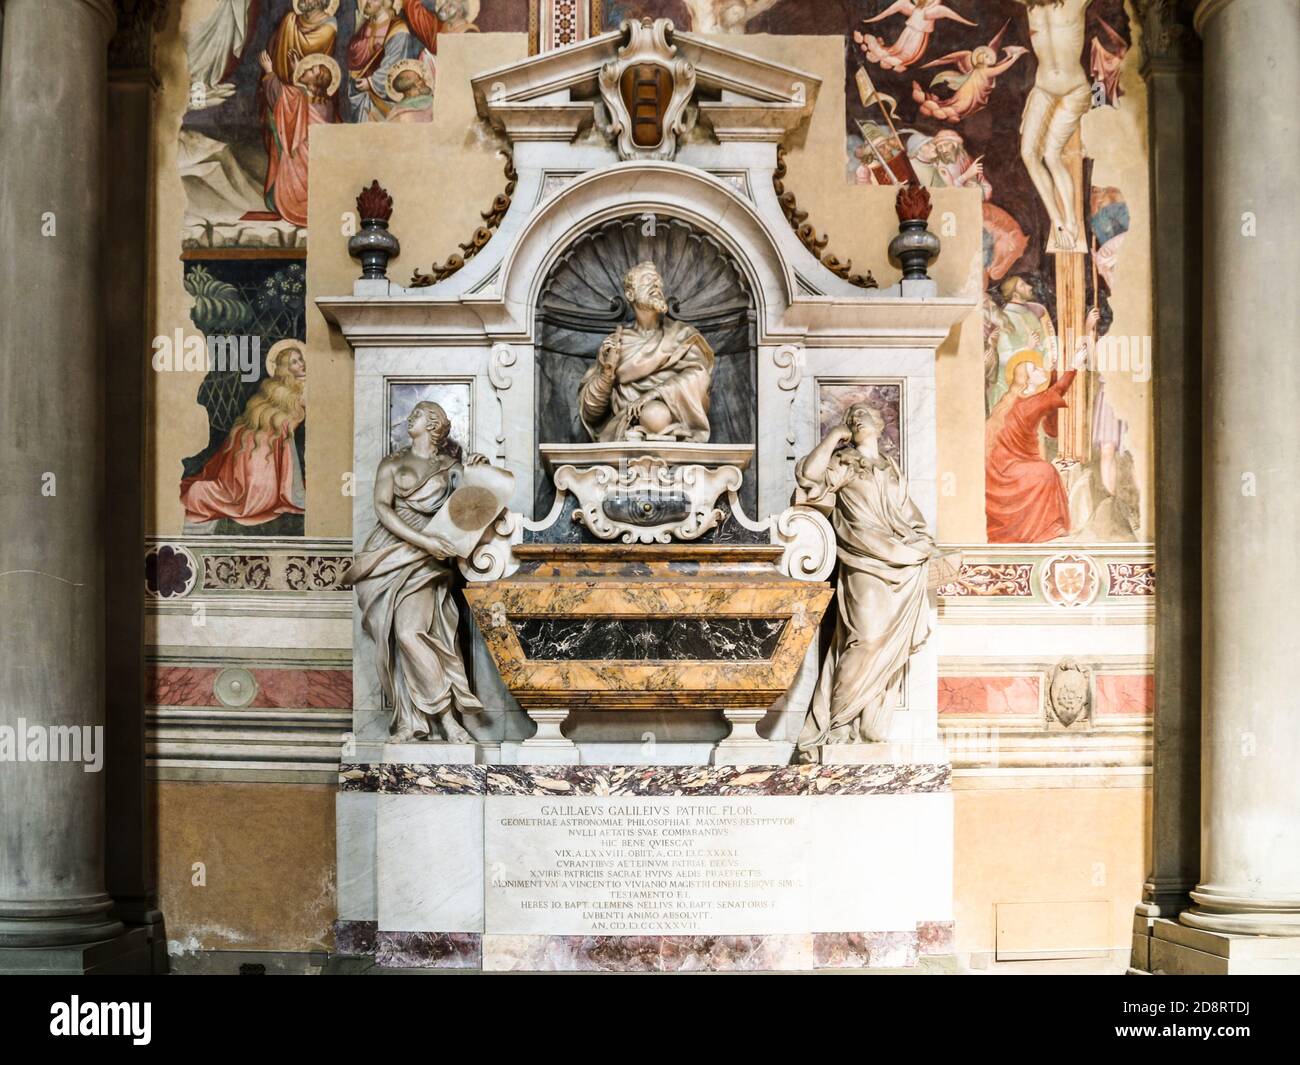 Le tombeau de Galileo di Vincenzo Bonauti de' Galilei dans la basilique de Santa Croce à Florence, Italie. Il était un célèbre astronome italien, physicien... Banque D'Images